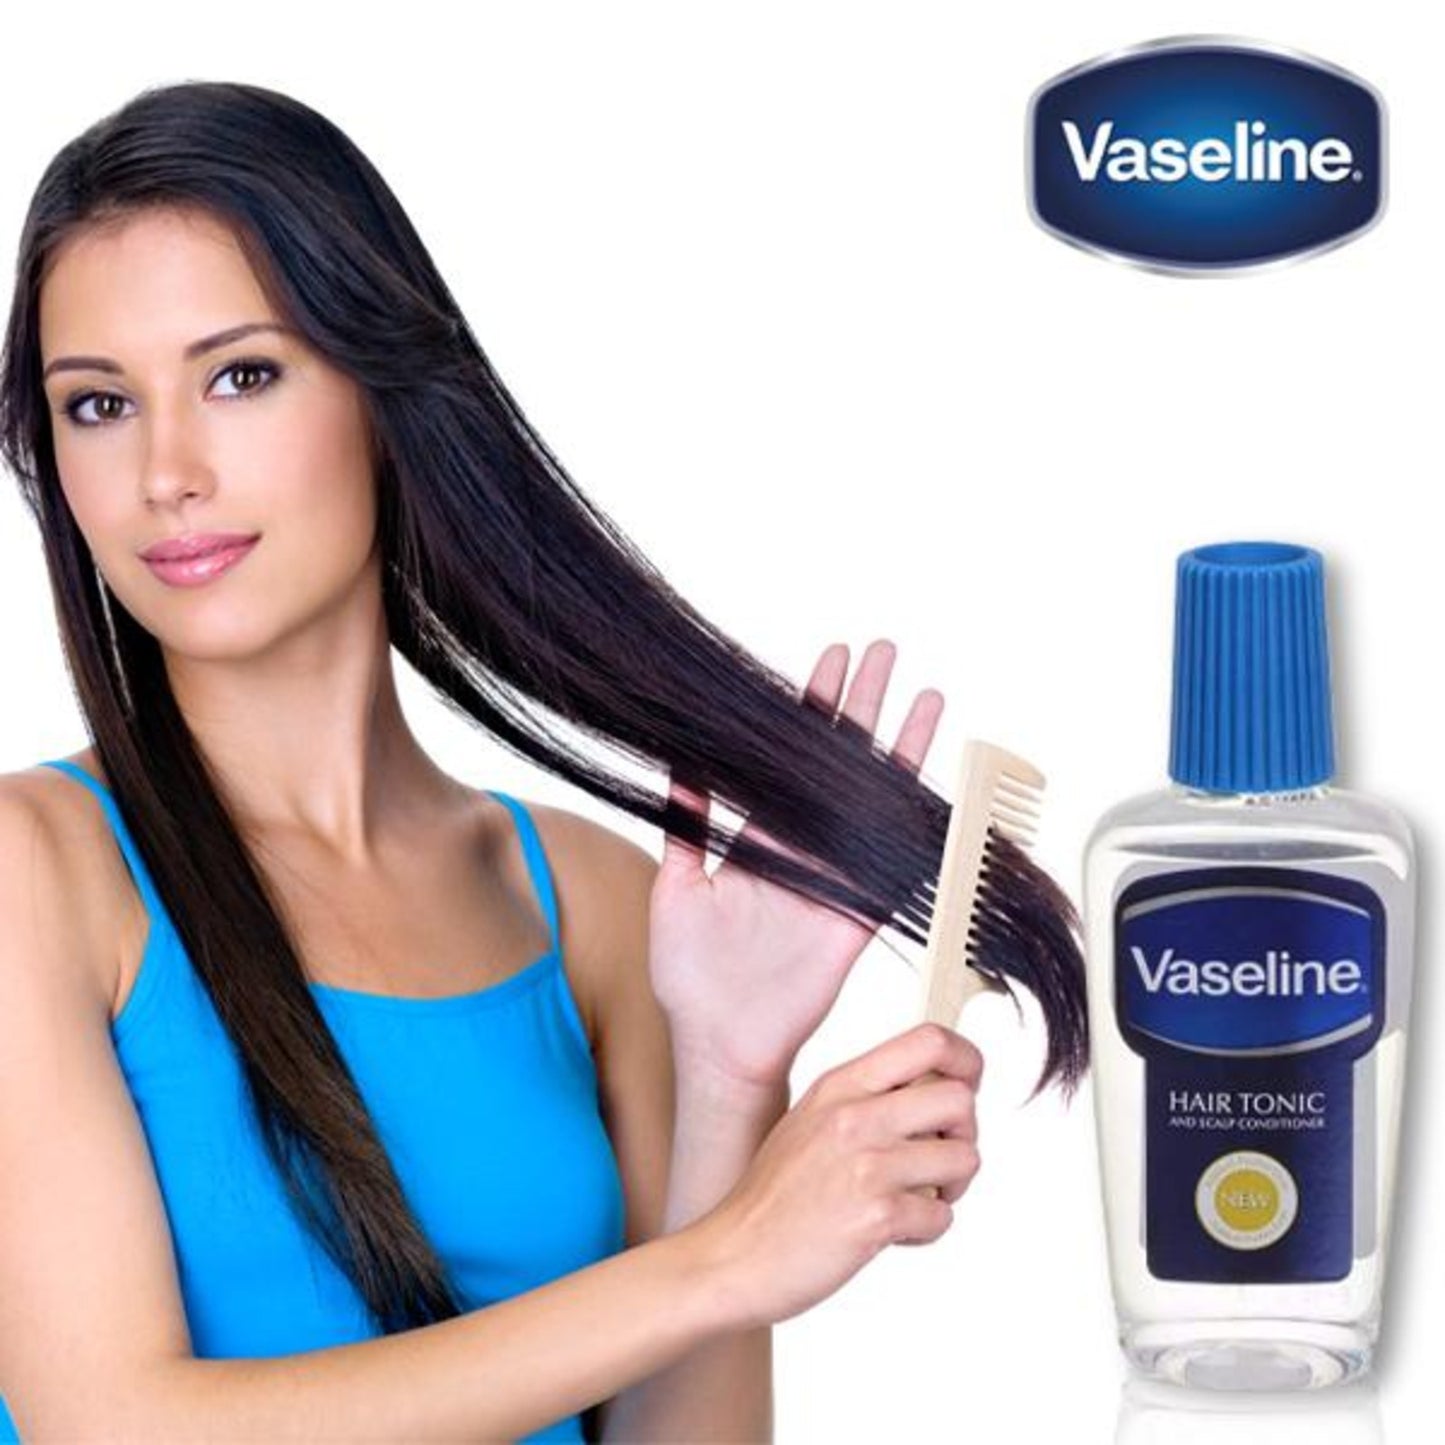 Vaseline Hair Tonic & Scalp Conditioner